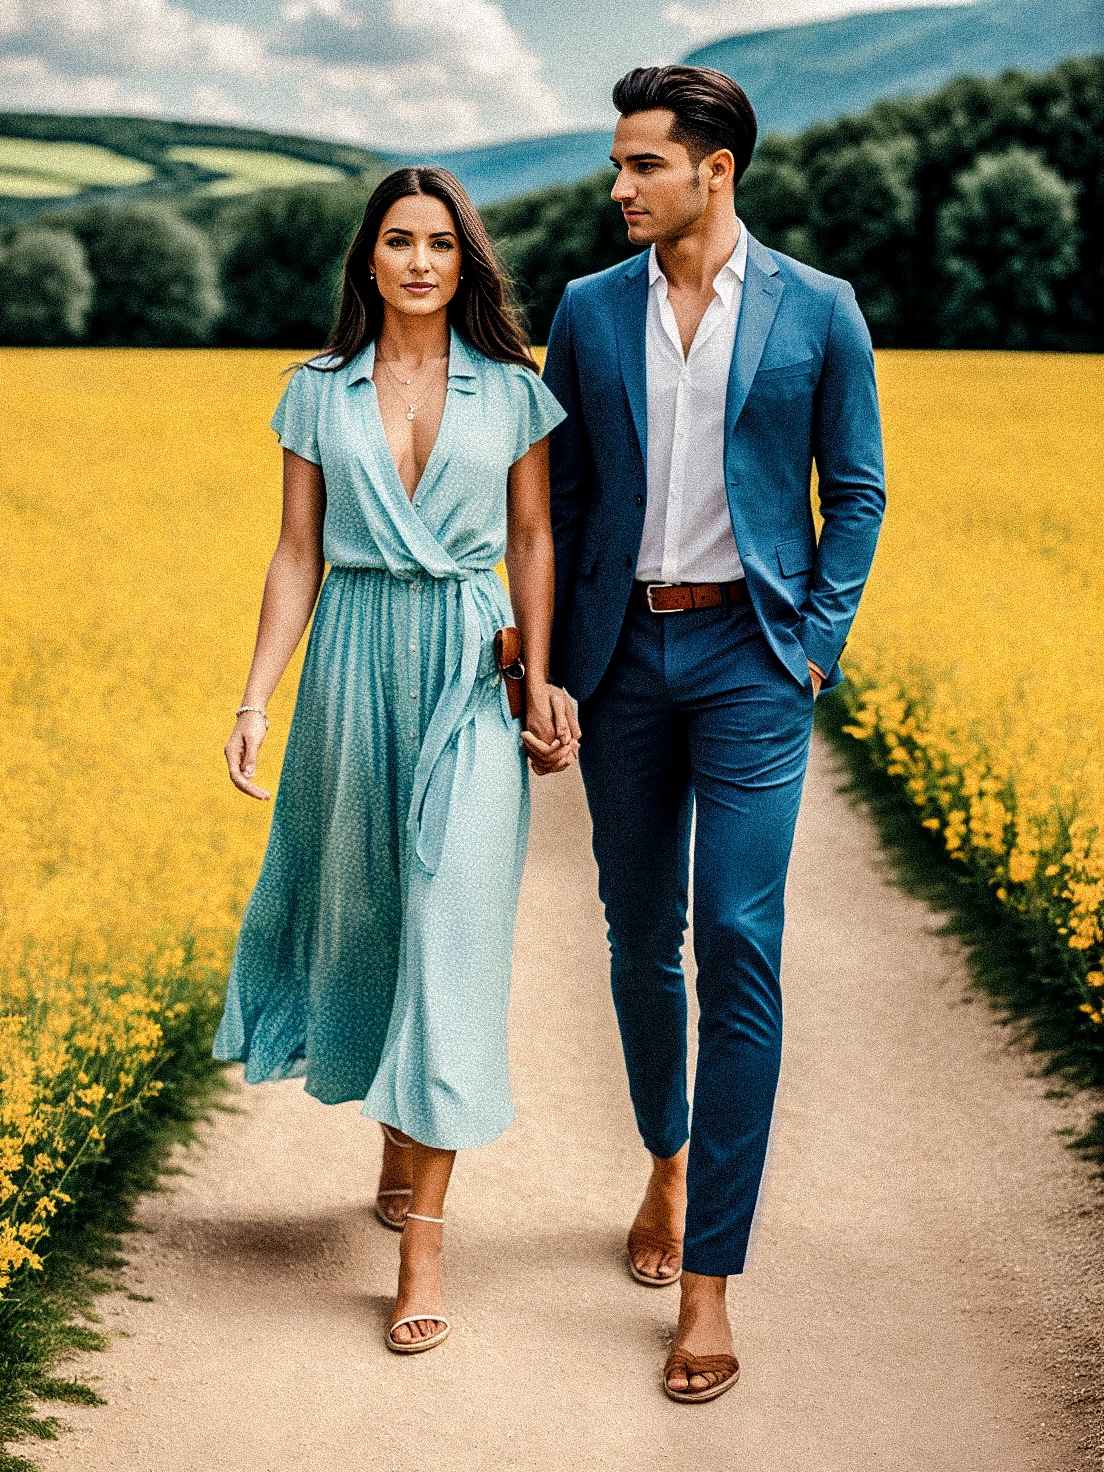 Een man en een vrouw lopen door een veld met gele bloemen, gekleed in elegante kleding die geschikt is voor een bruiloft.